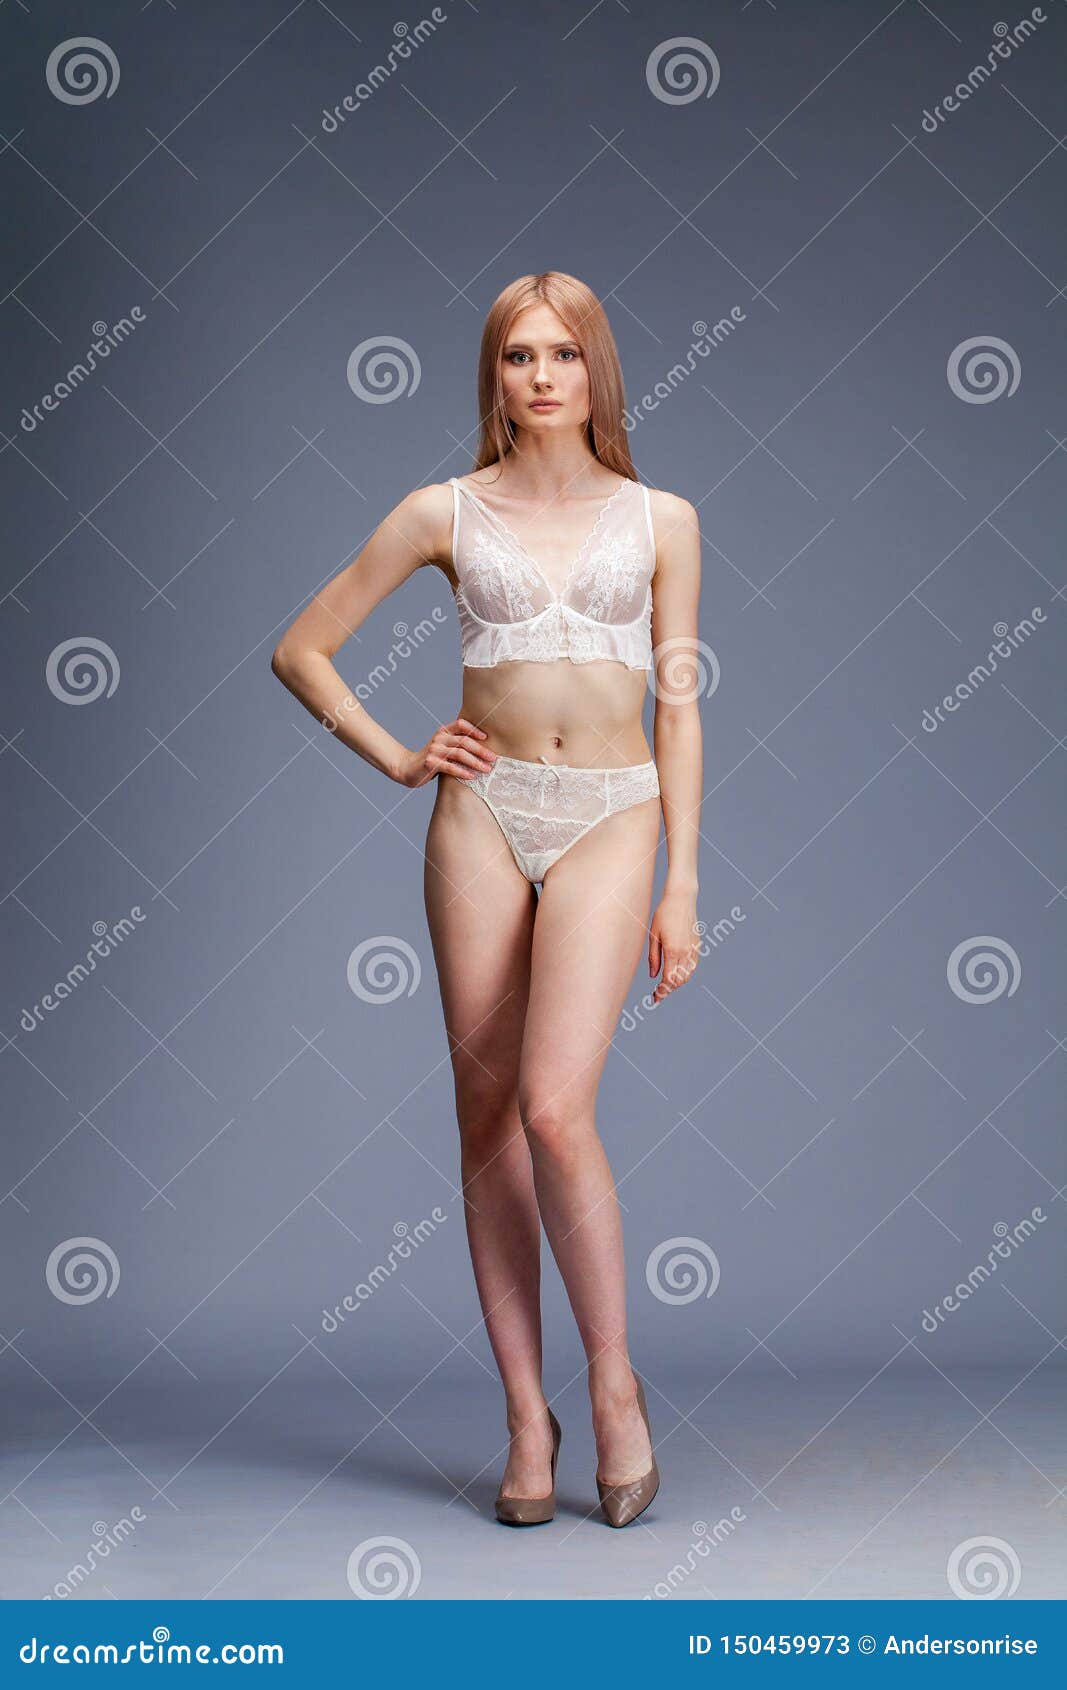 Lanzamiento De La Moda De La Mujer Atractiva Joven En La Ropa Interior Blanca Imagen de archivo - Imagen forma,